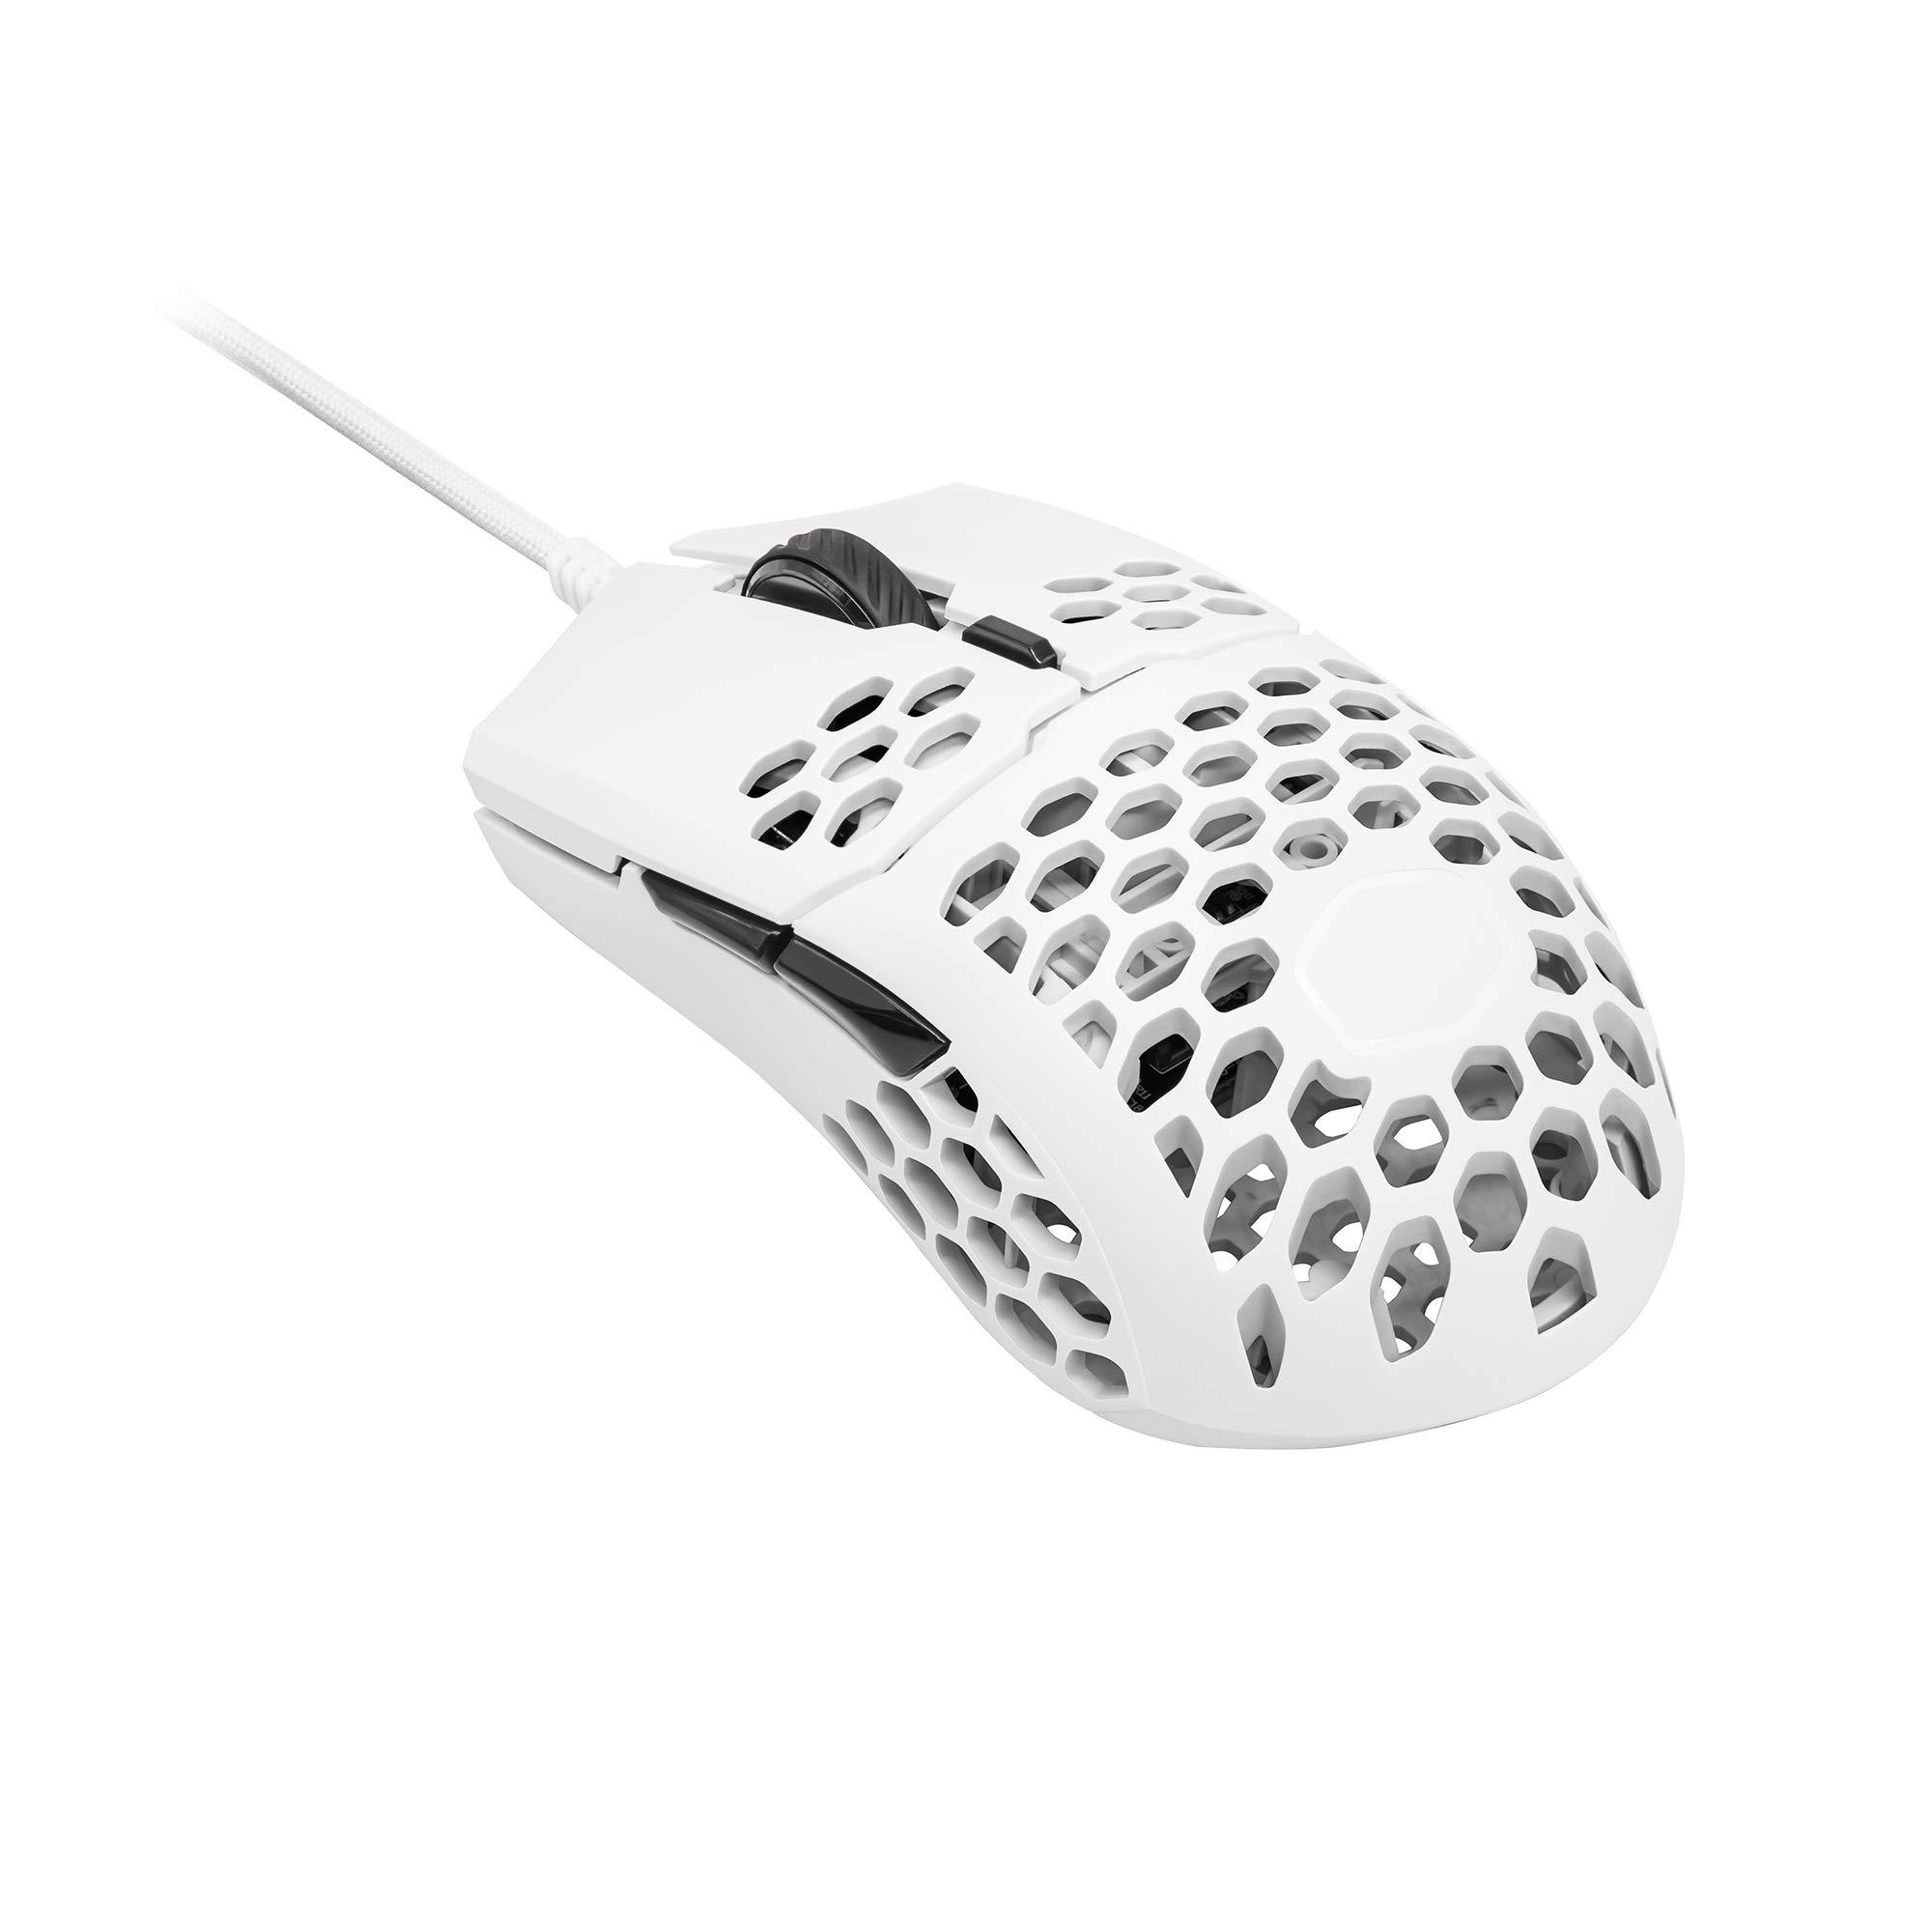 Cooler Master MM710 ultraleichte 53g Gaming-Maus mit Kabel, Computer-Maus mit Pixart-Sensor (16000 DPI), Omron-Schalter (20 Millionen Klicks), PTFE-Gleitfüße, beidhändige Wabenschale - Matt-Schwarz